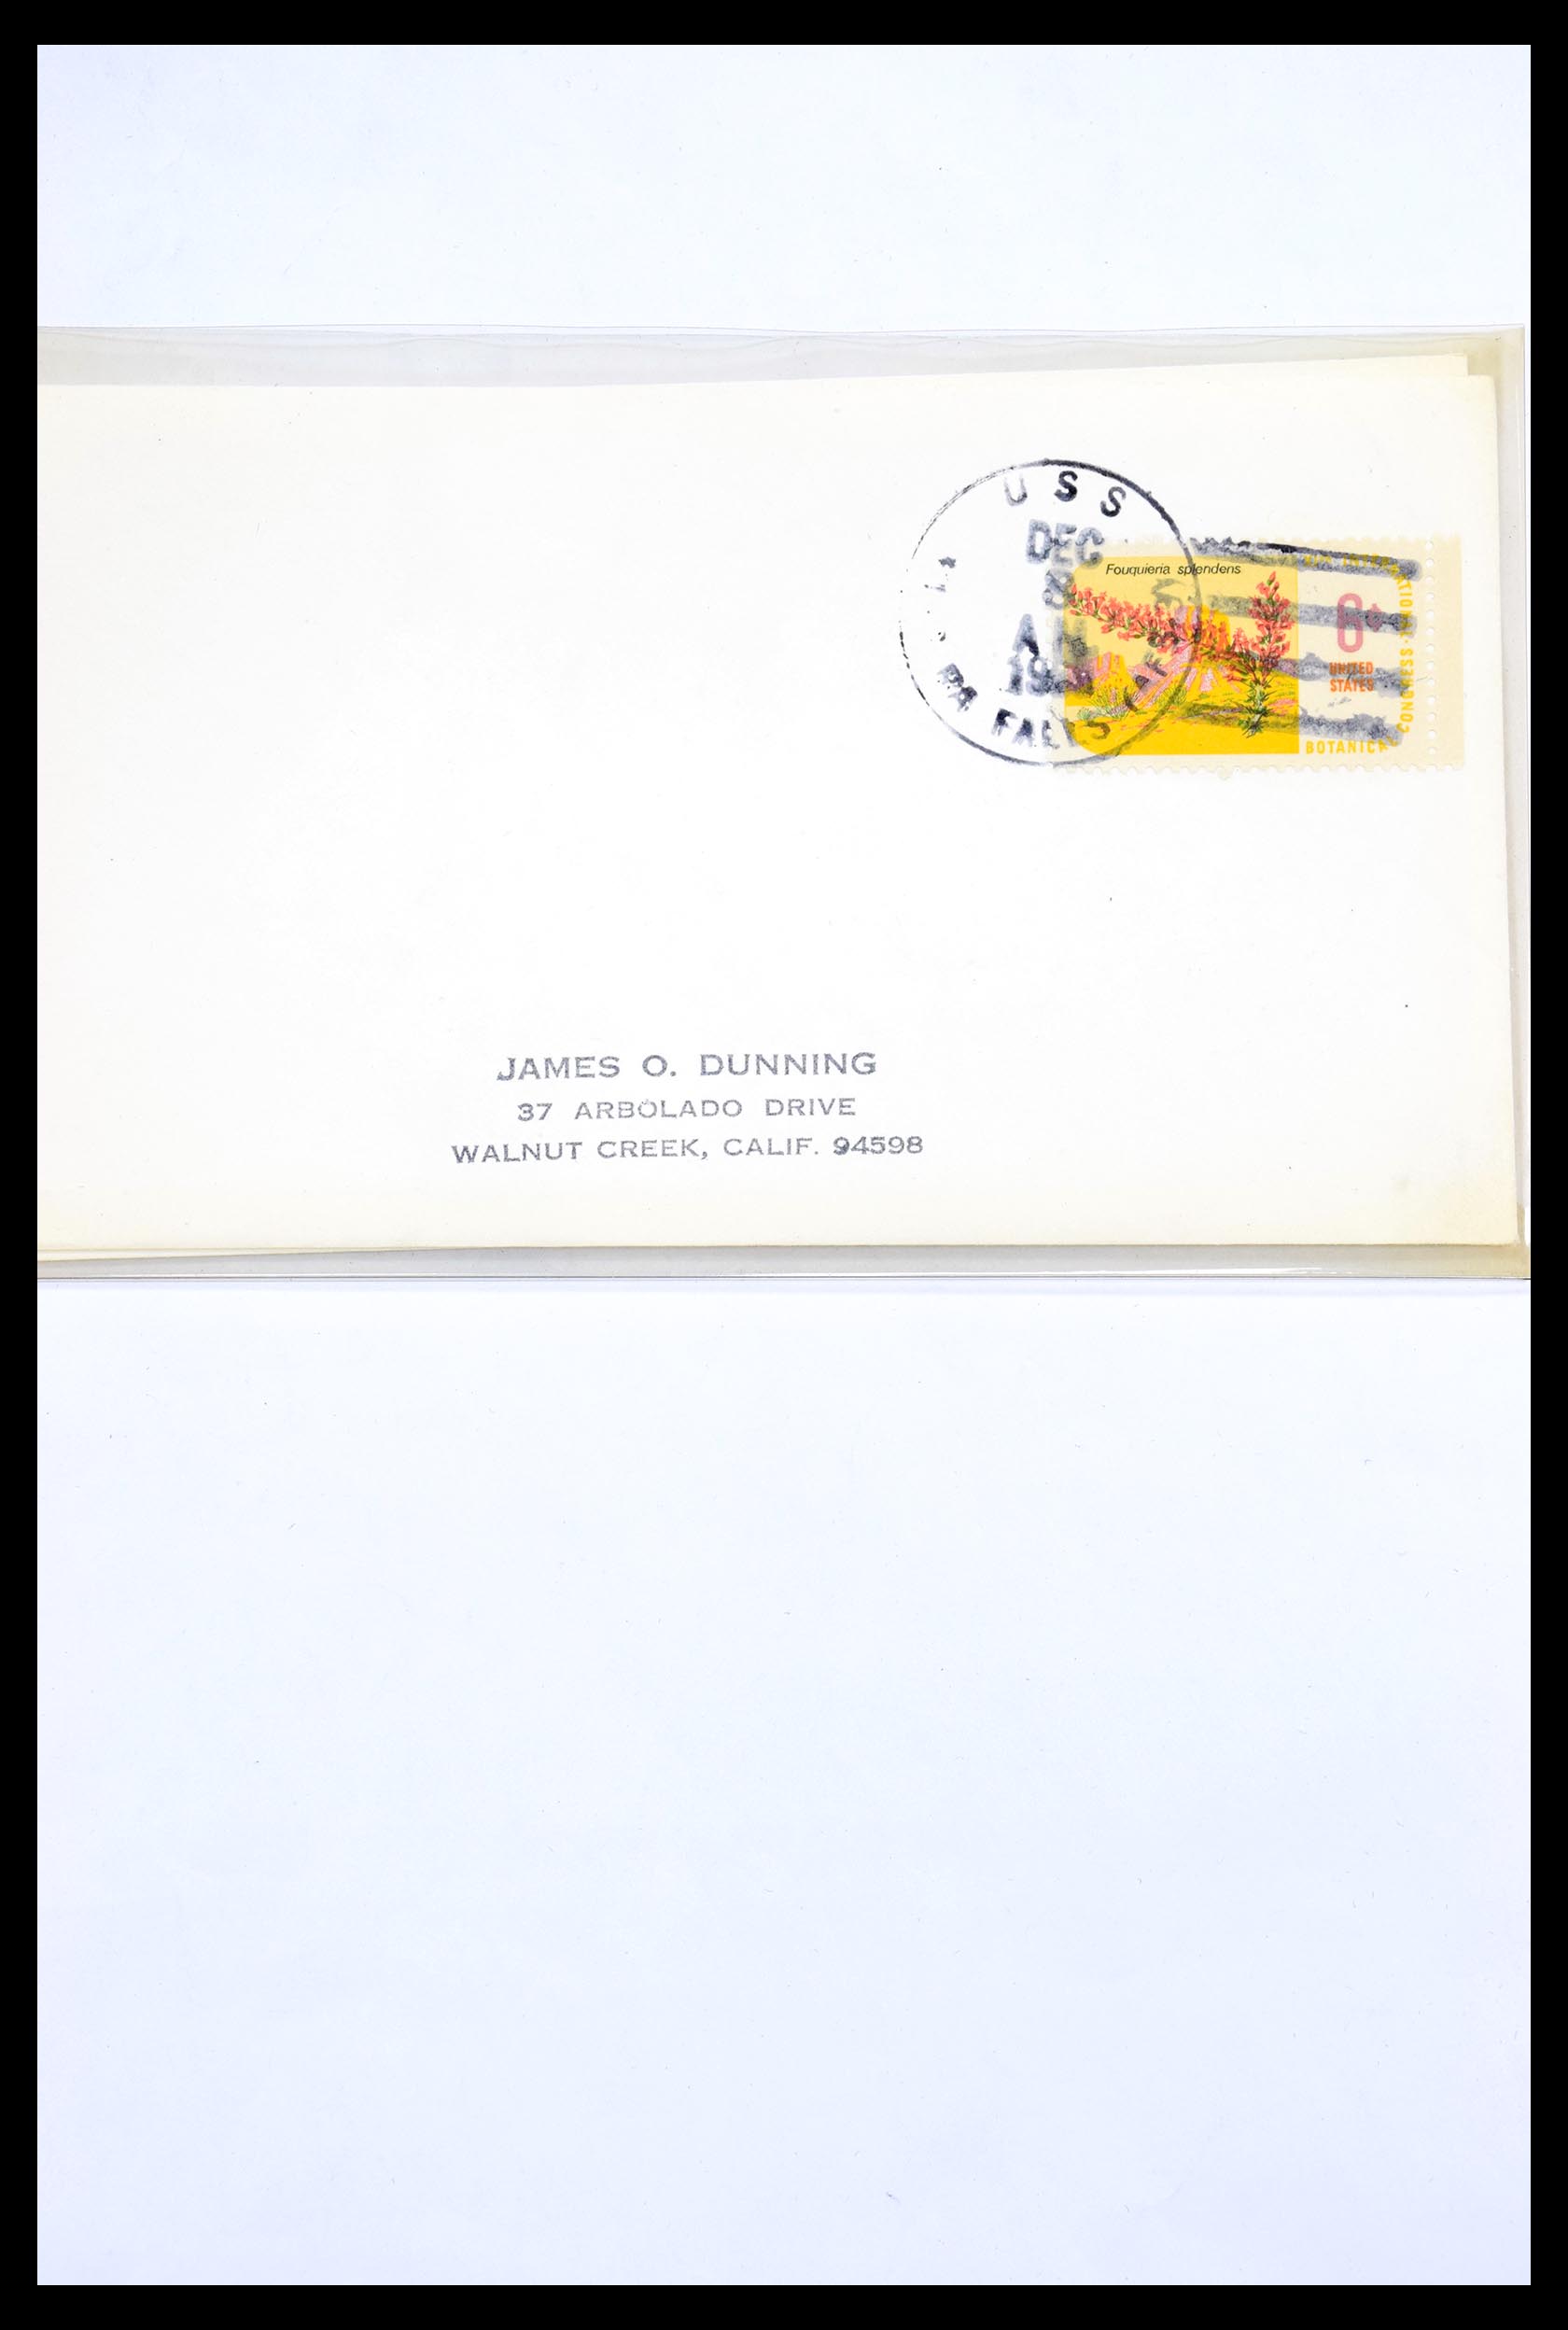 30341 294 - 30341 USA scheepspost brieven 1930-1970.